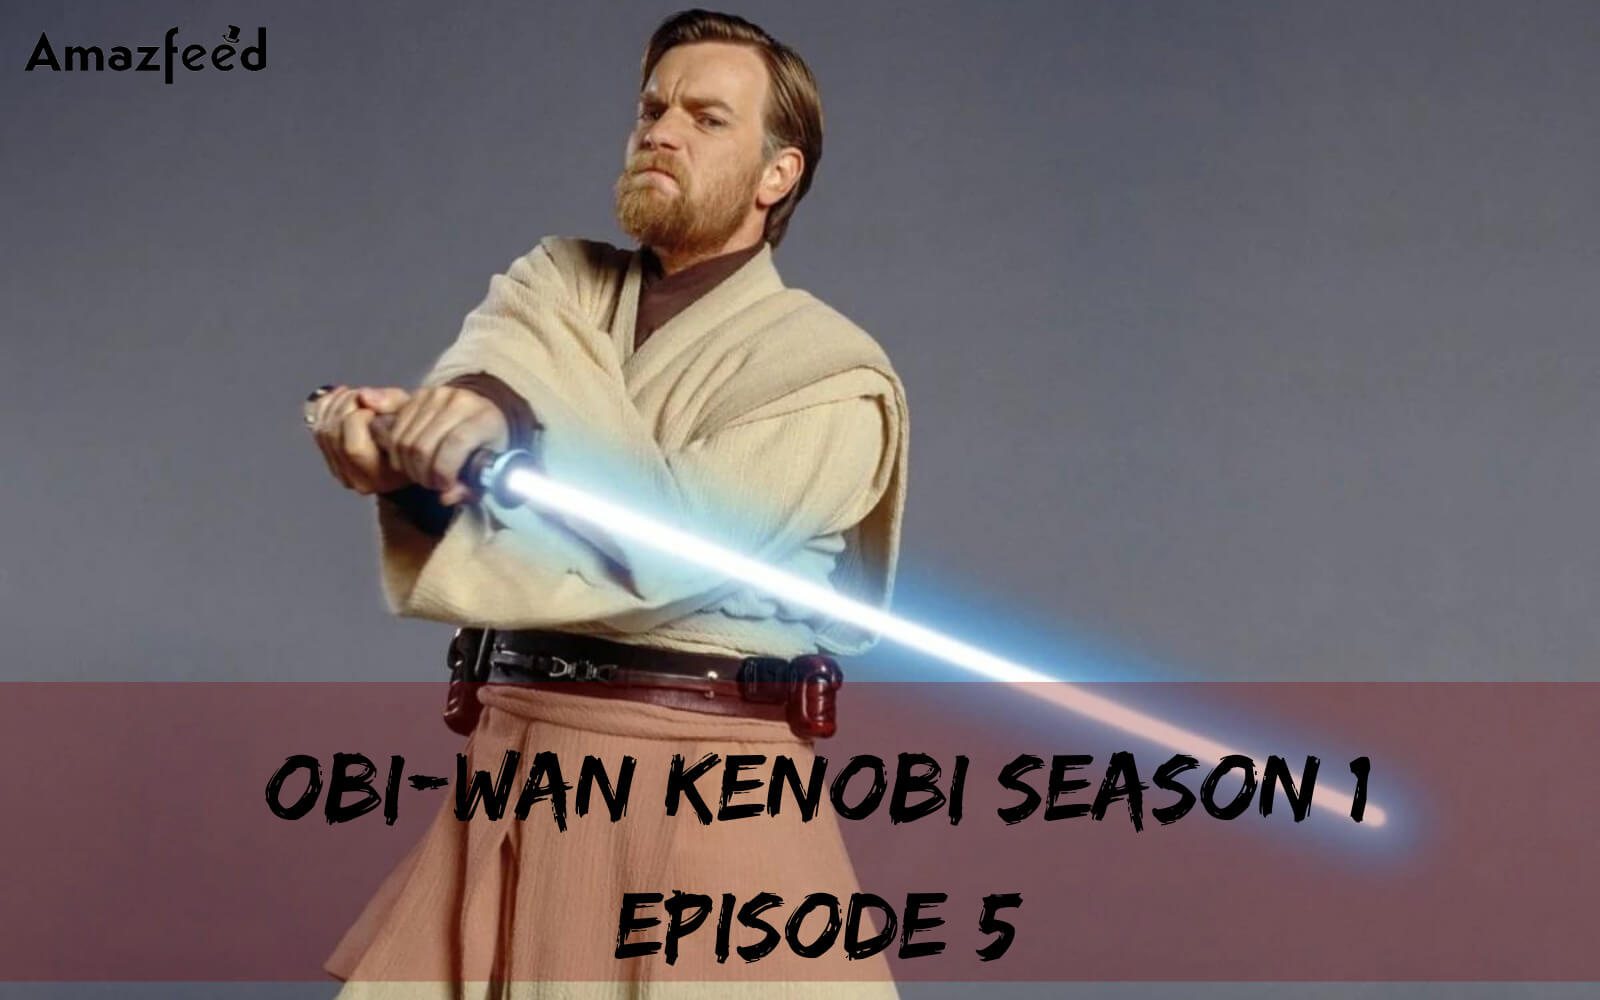 Obi-Wan Kenobi Season 1 Episode 5 release date